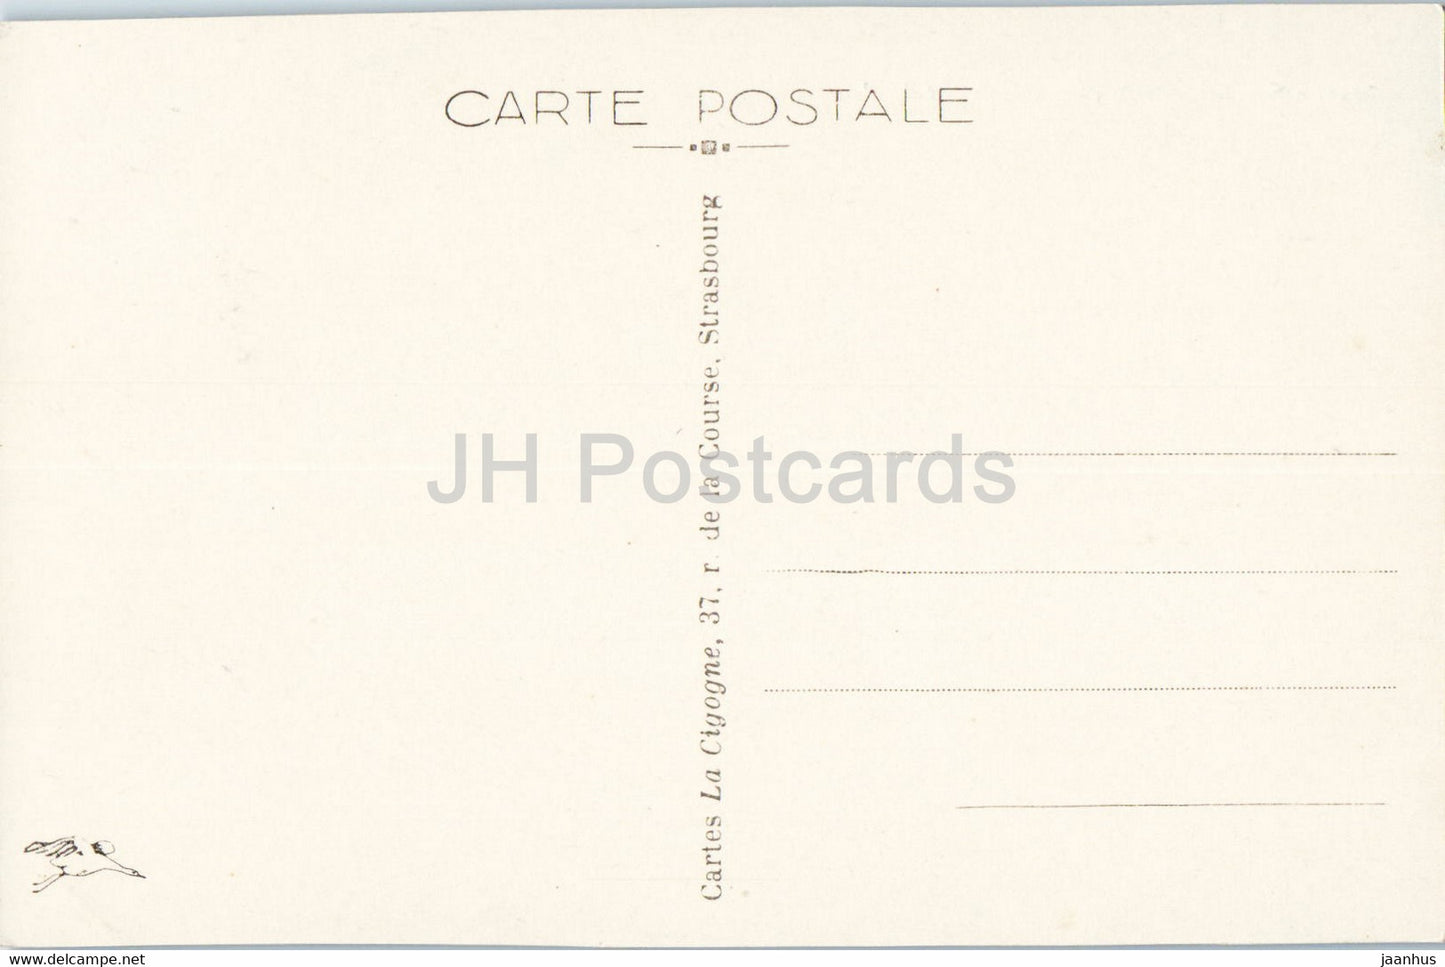 Sewen - Réservoir de l'Alfeld - 5051 - carte postale ancienne - France - inutilisée